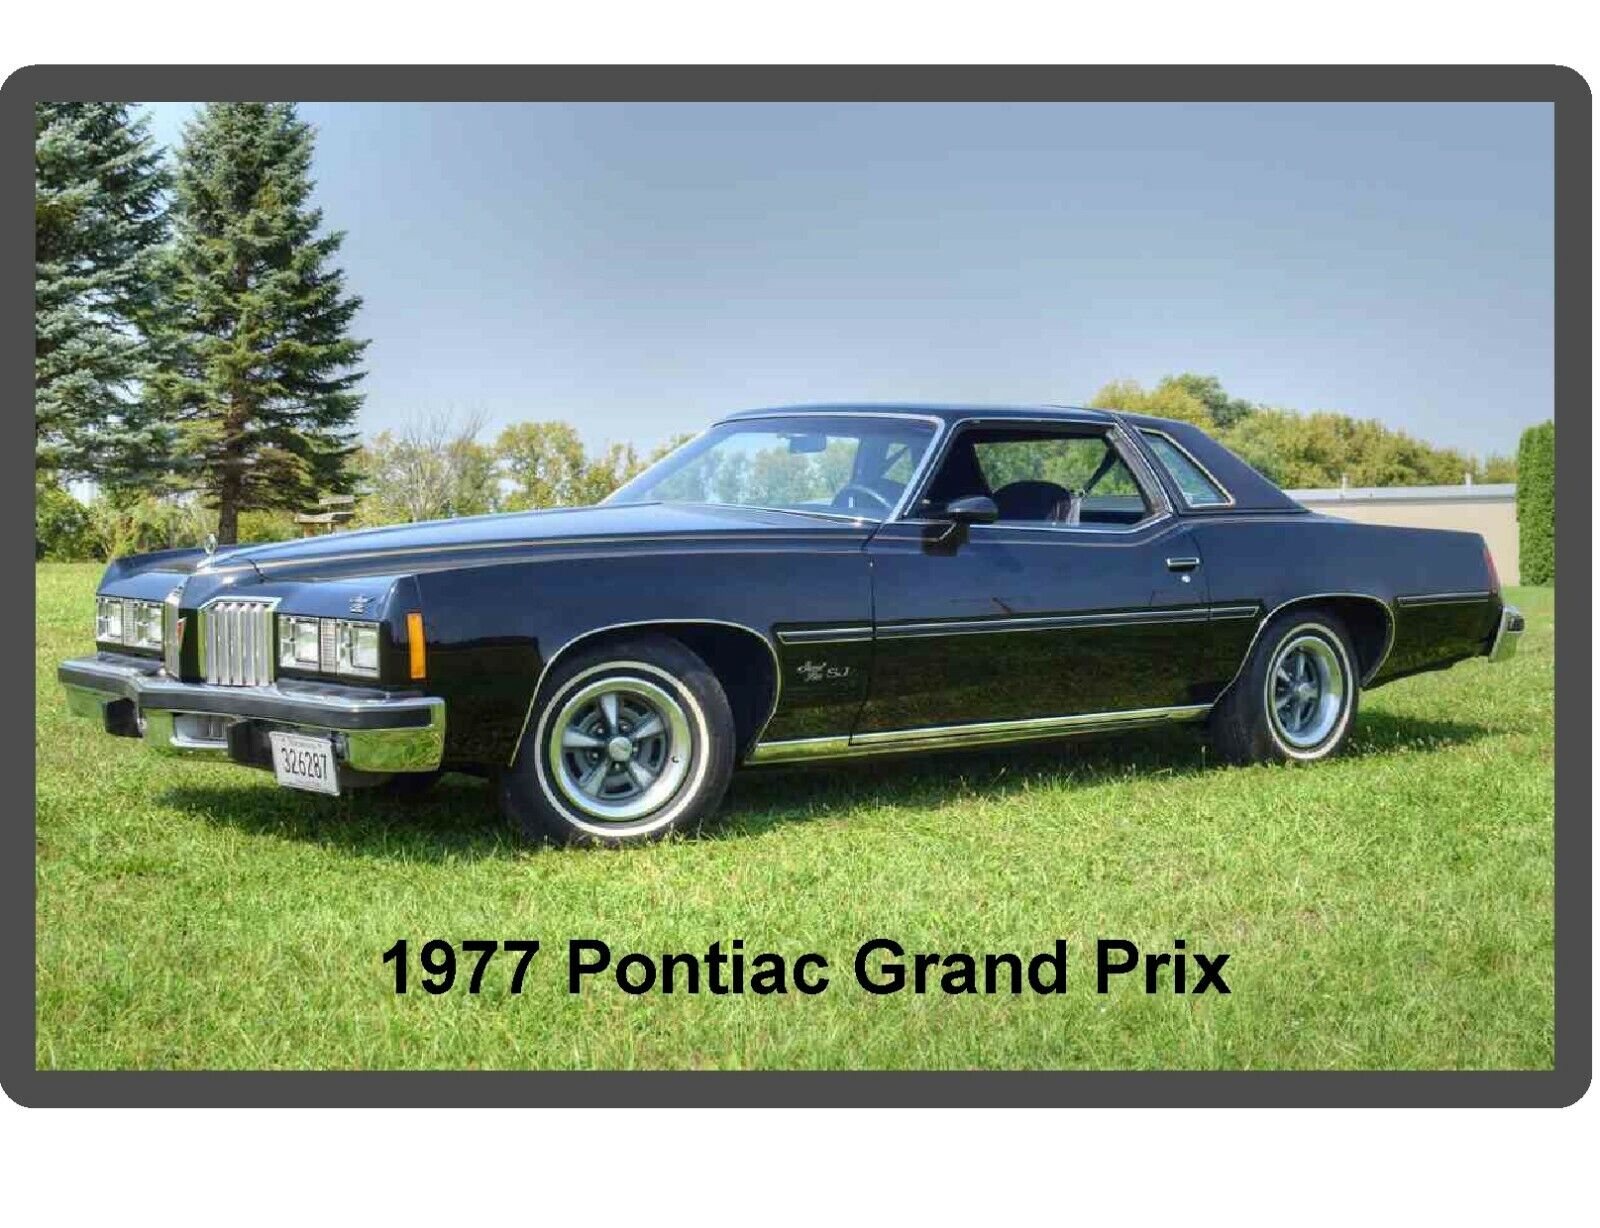 1977 Pontiac Grand Prix Refrigerator / Tool Box  Magnet